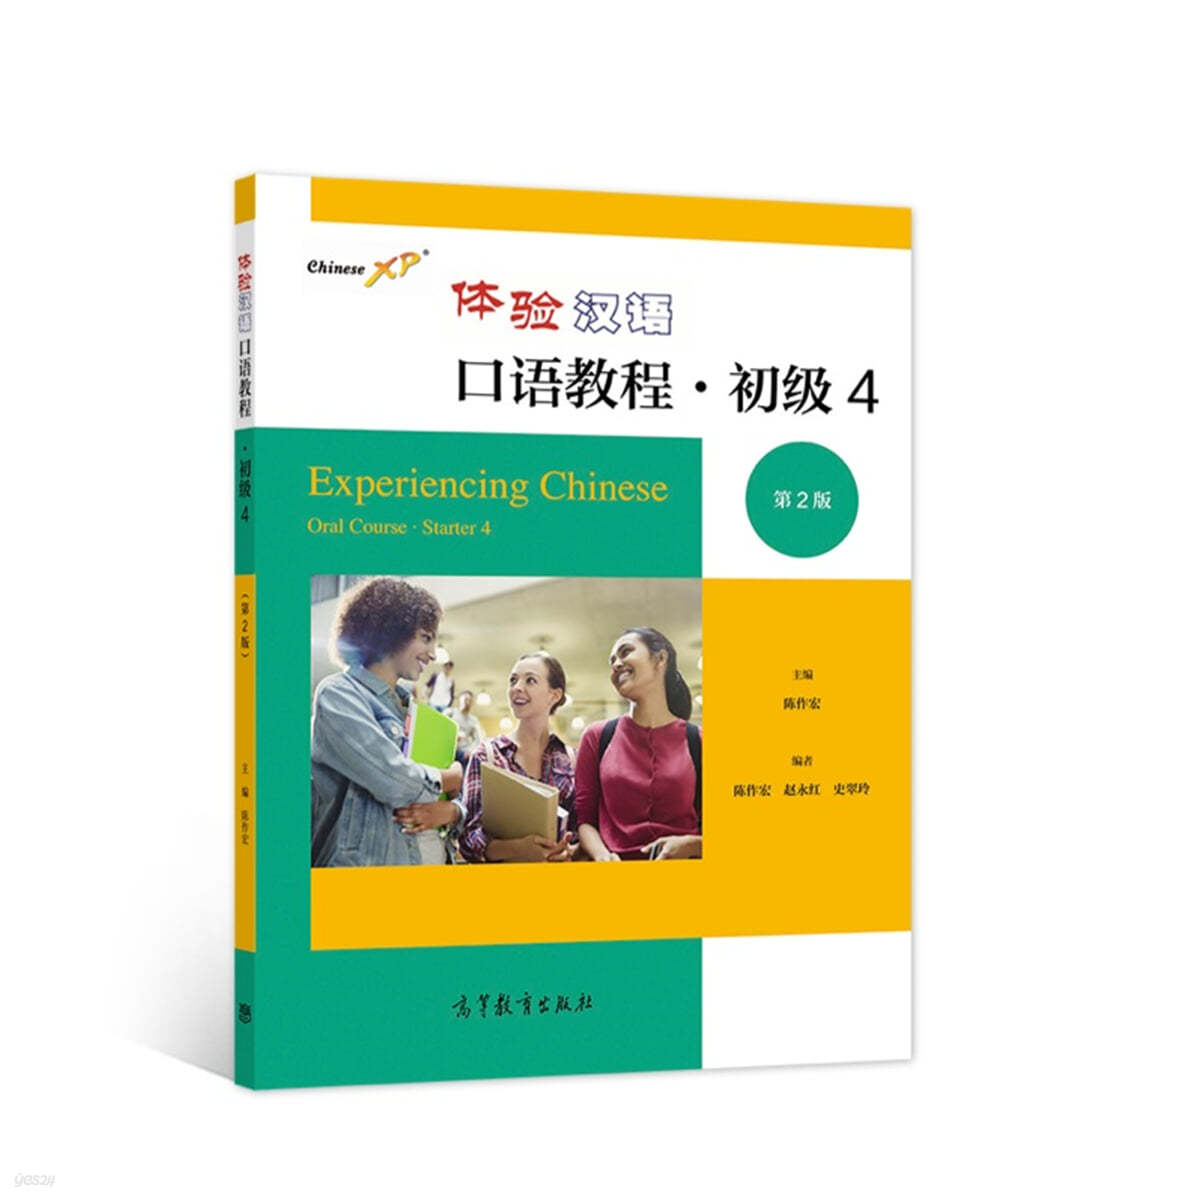 체험한어구어교정 초급4 (제2판 )體驗漢語口語?程 初級4（第2版）